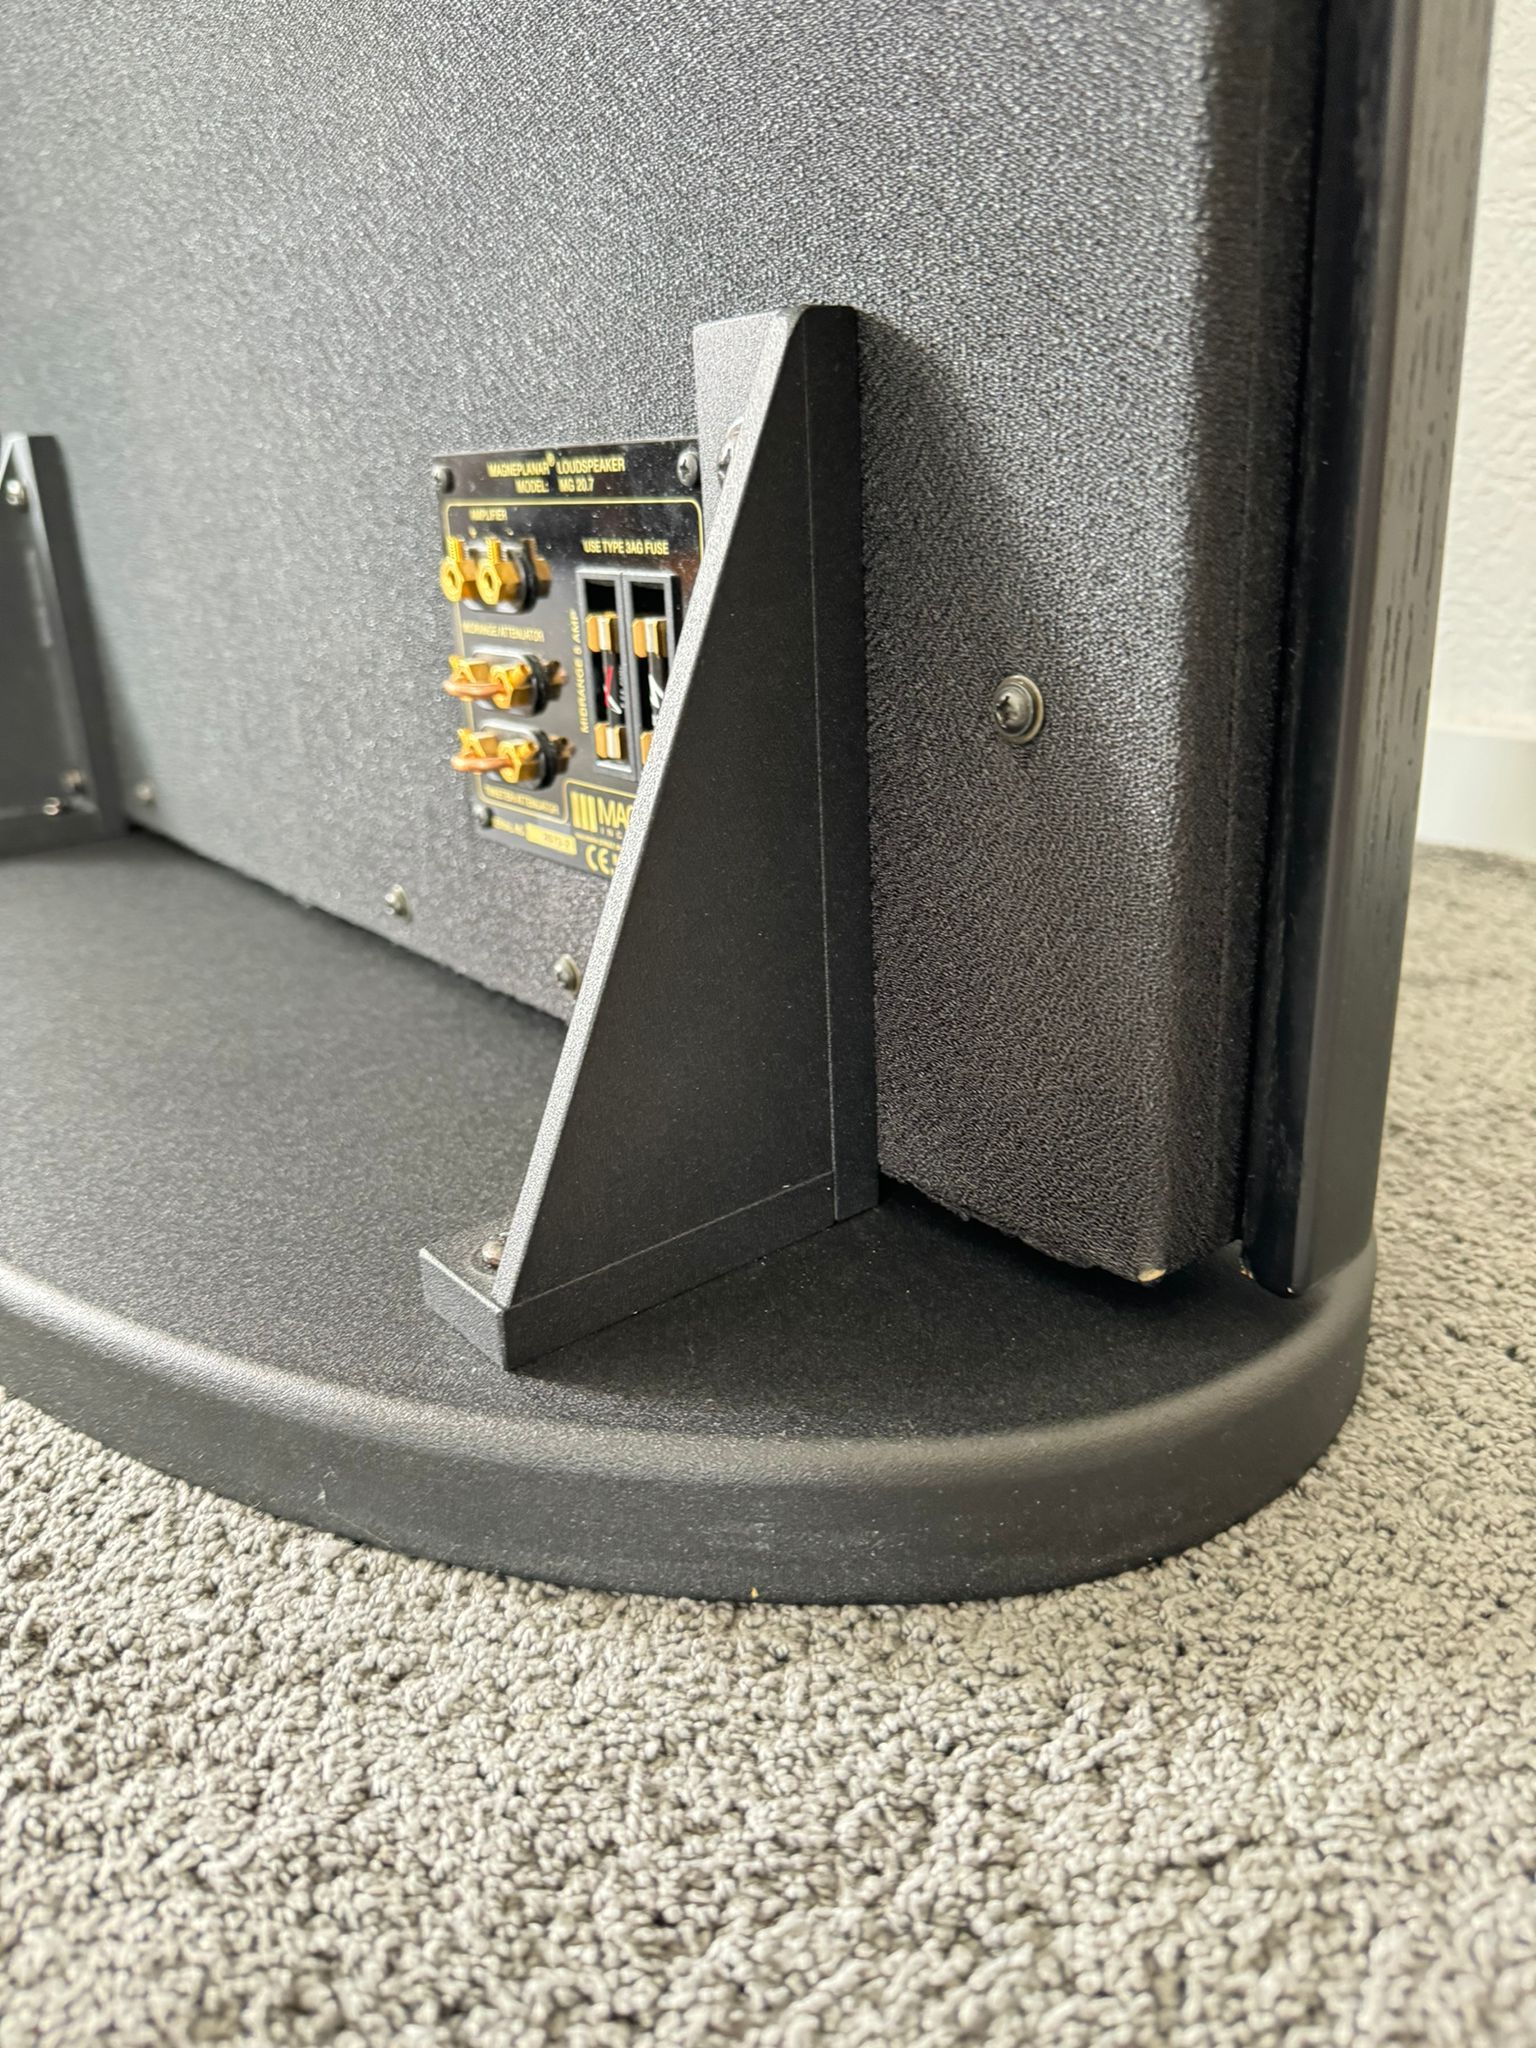 Magnepan 20.7 speakers in black-grey 11